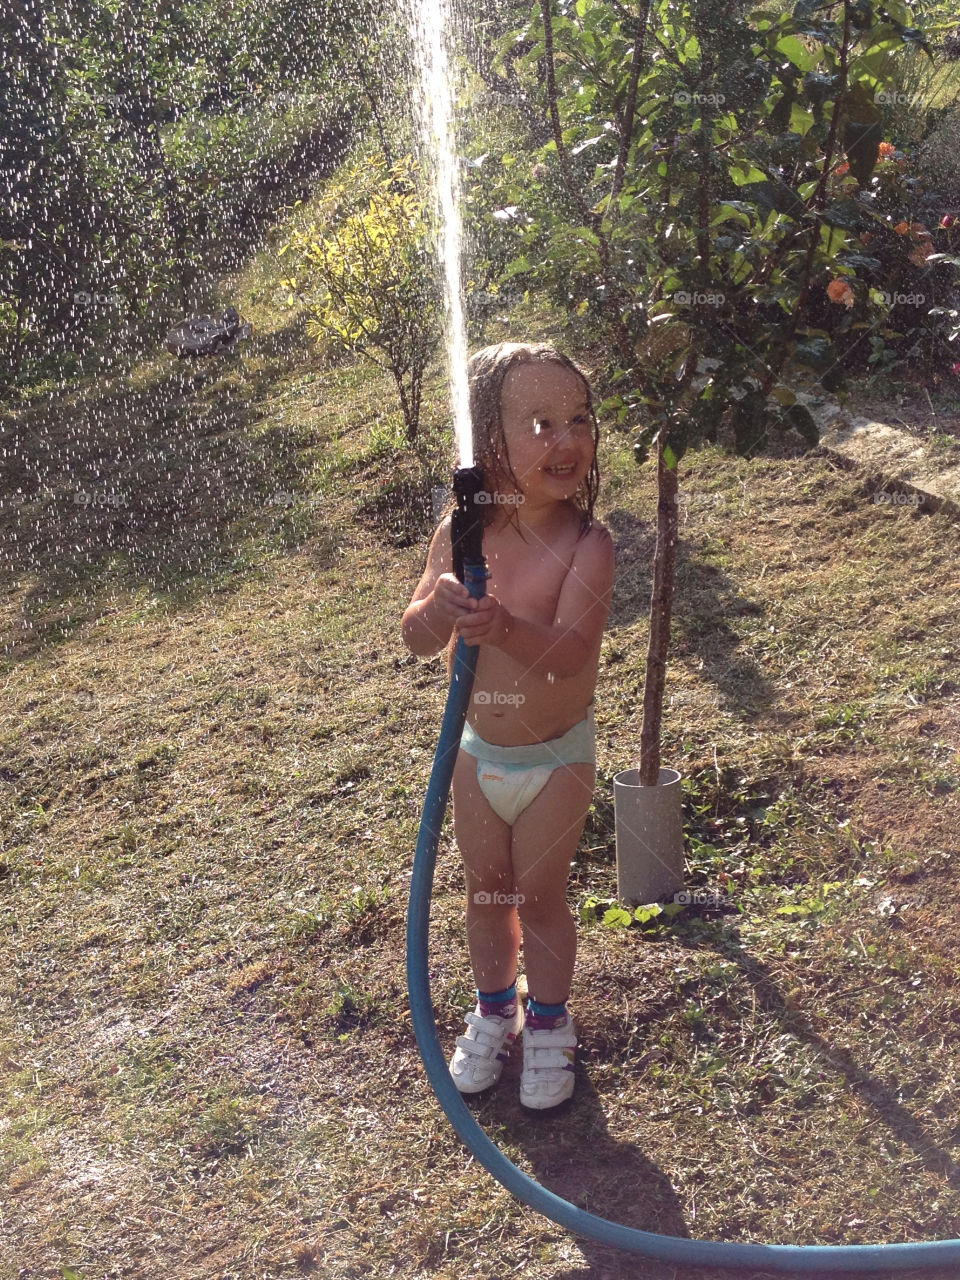 happy sunny water kid by kikicheeky